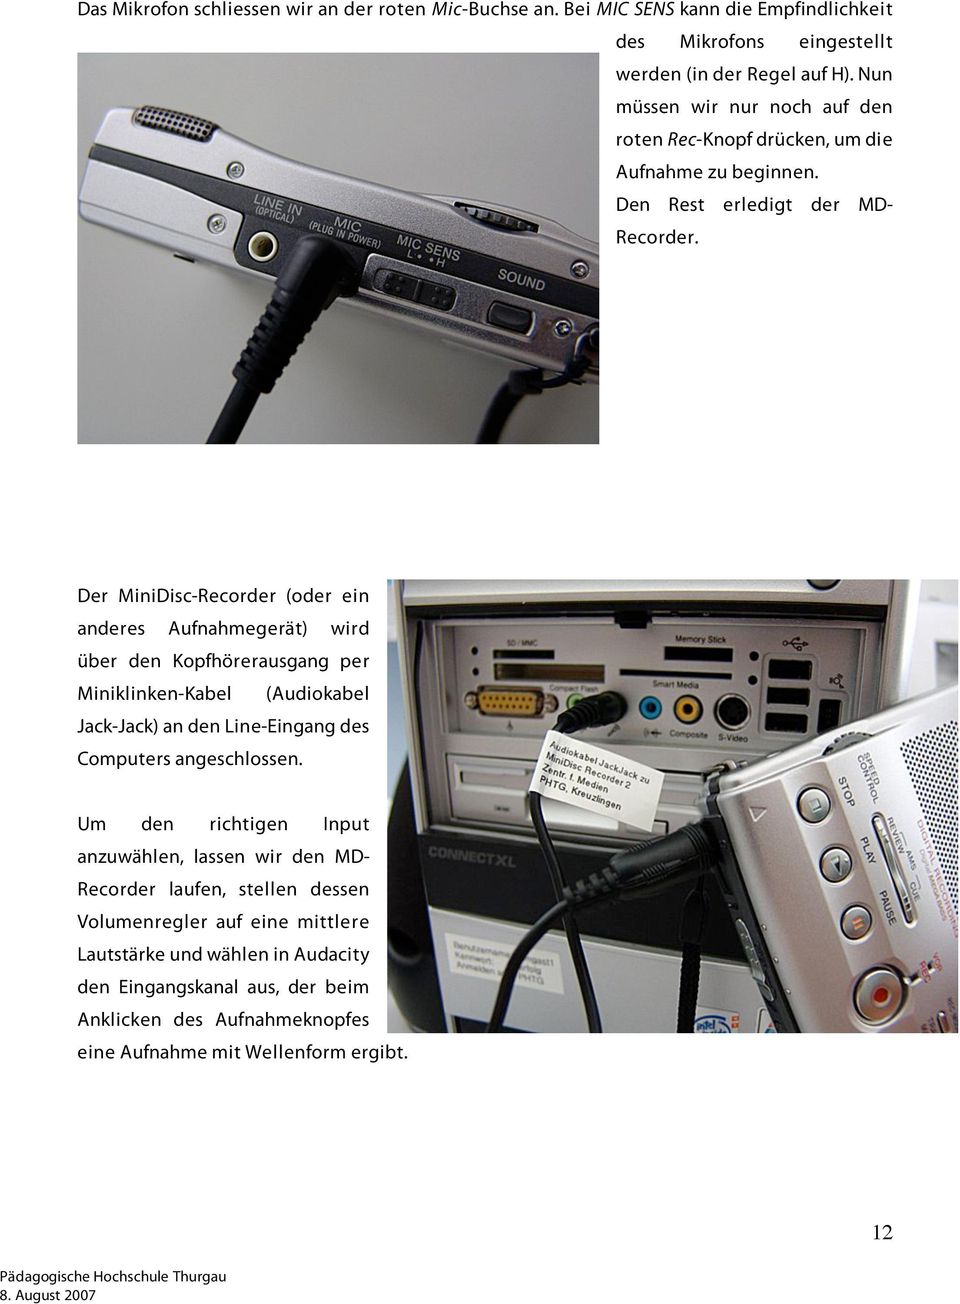 Der MiniDisc-Recorder (oder ein anderes Aufnahmegerät) wird über den Kopfhörerausgang per Miniklinken-Kabel (Audiokabel Jack-Jack) an den Line-Eingang des Computers